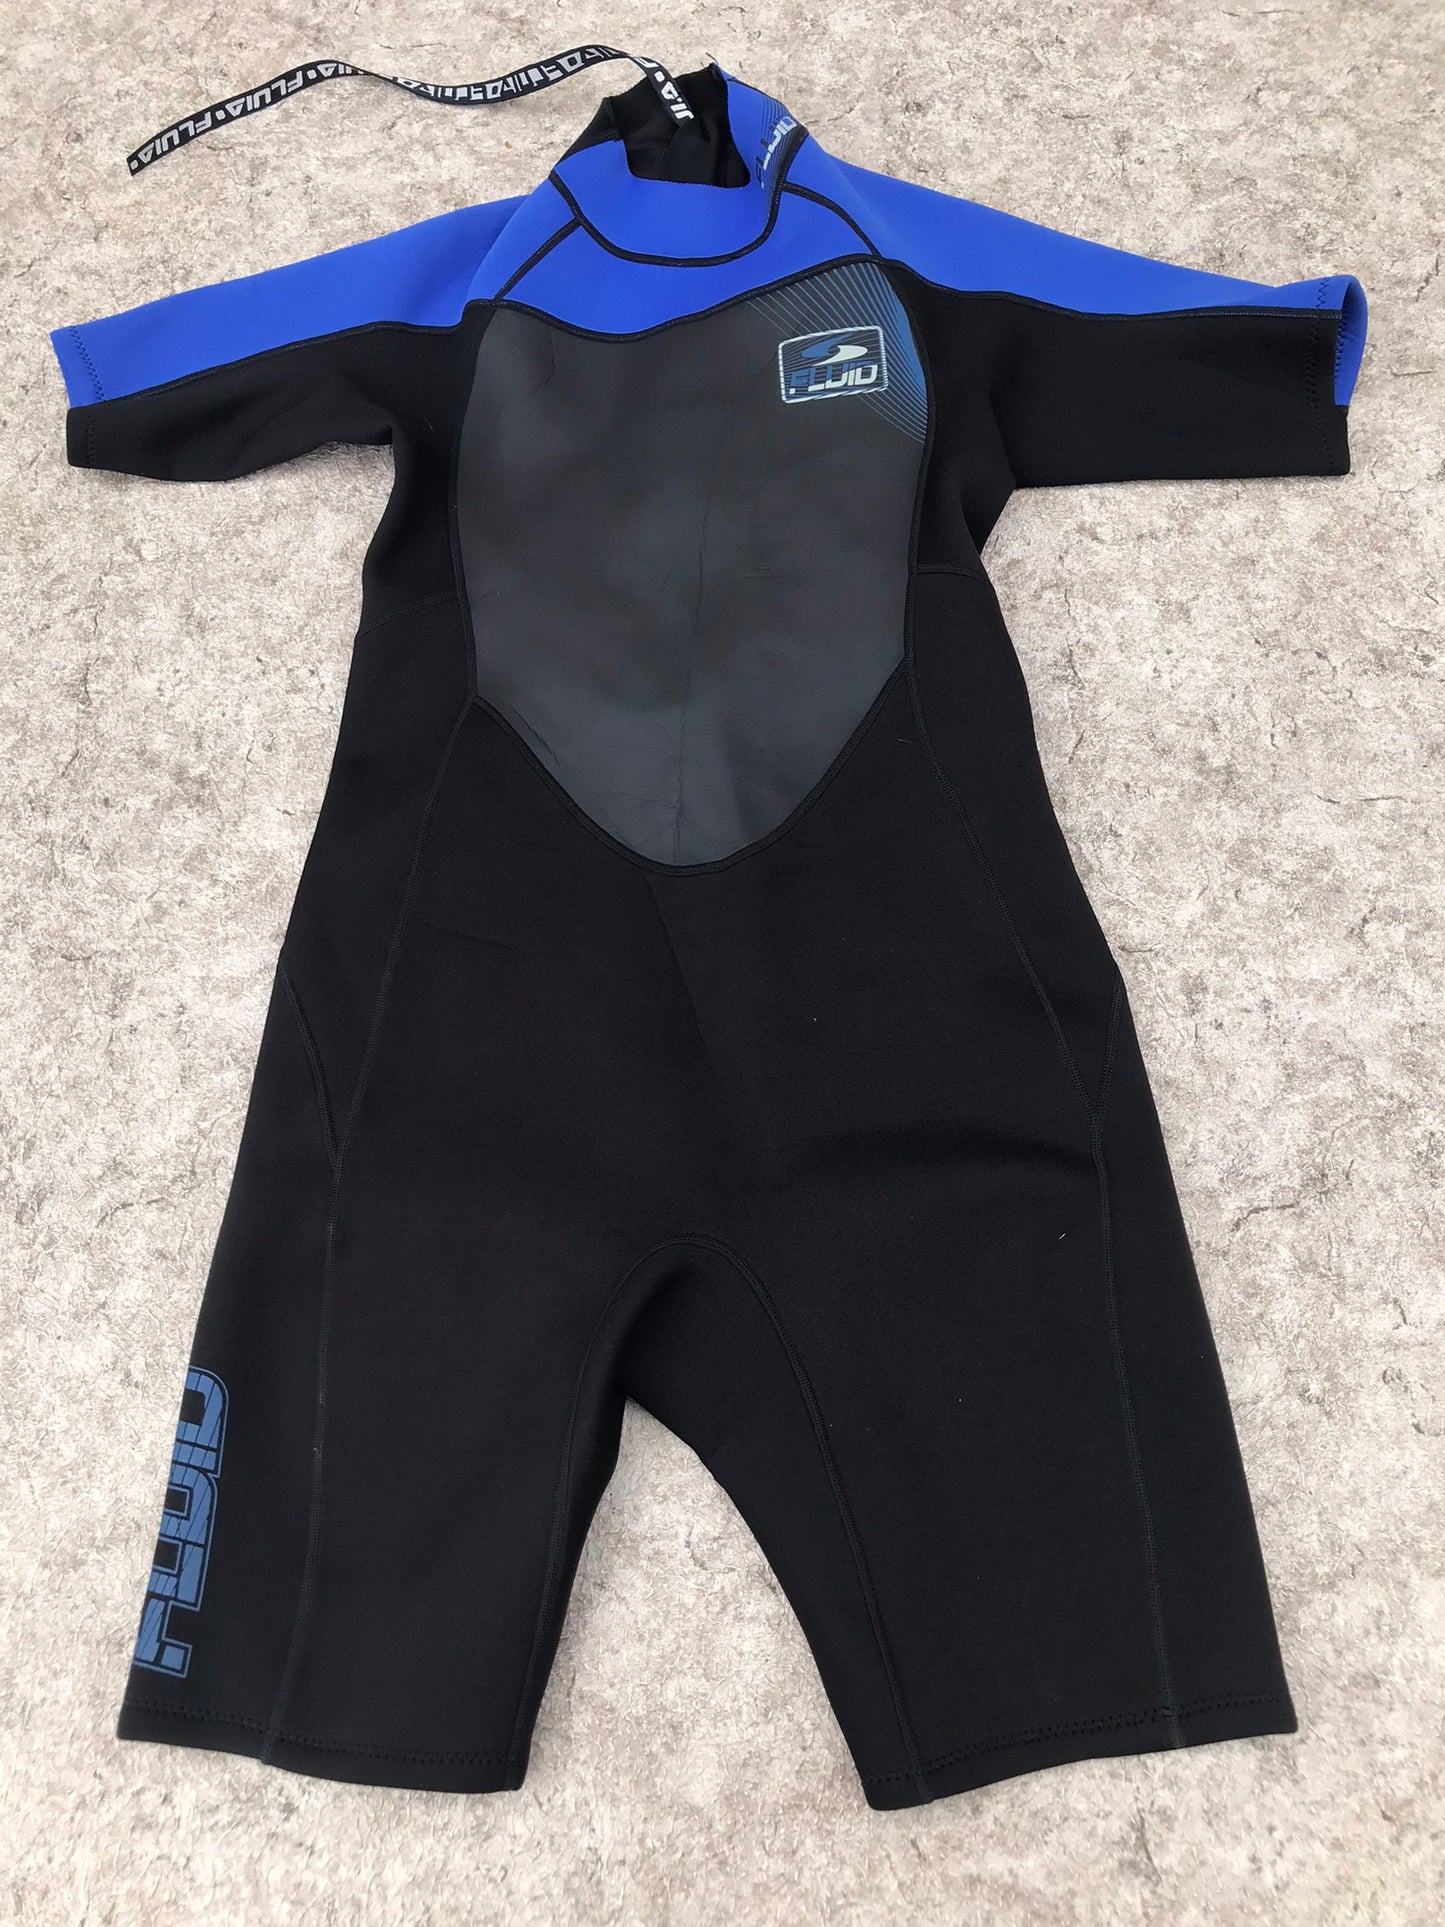 Wetsuit men's Size Large Fluid Blue Black 2-3 mm Neoprene Excellent